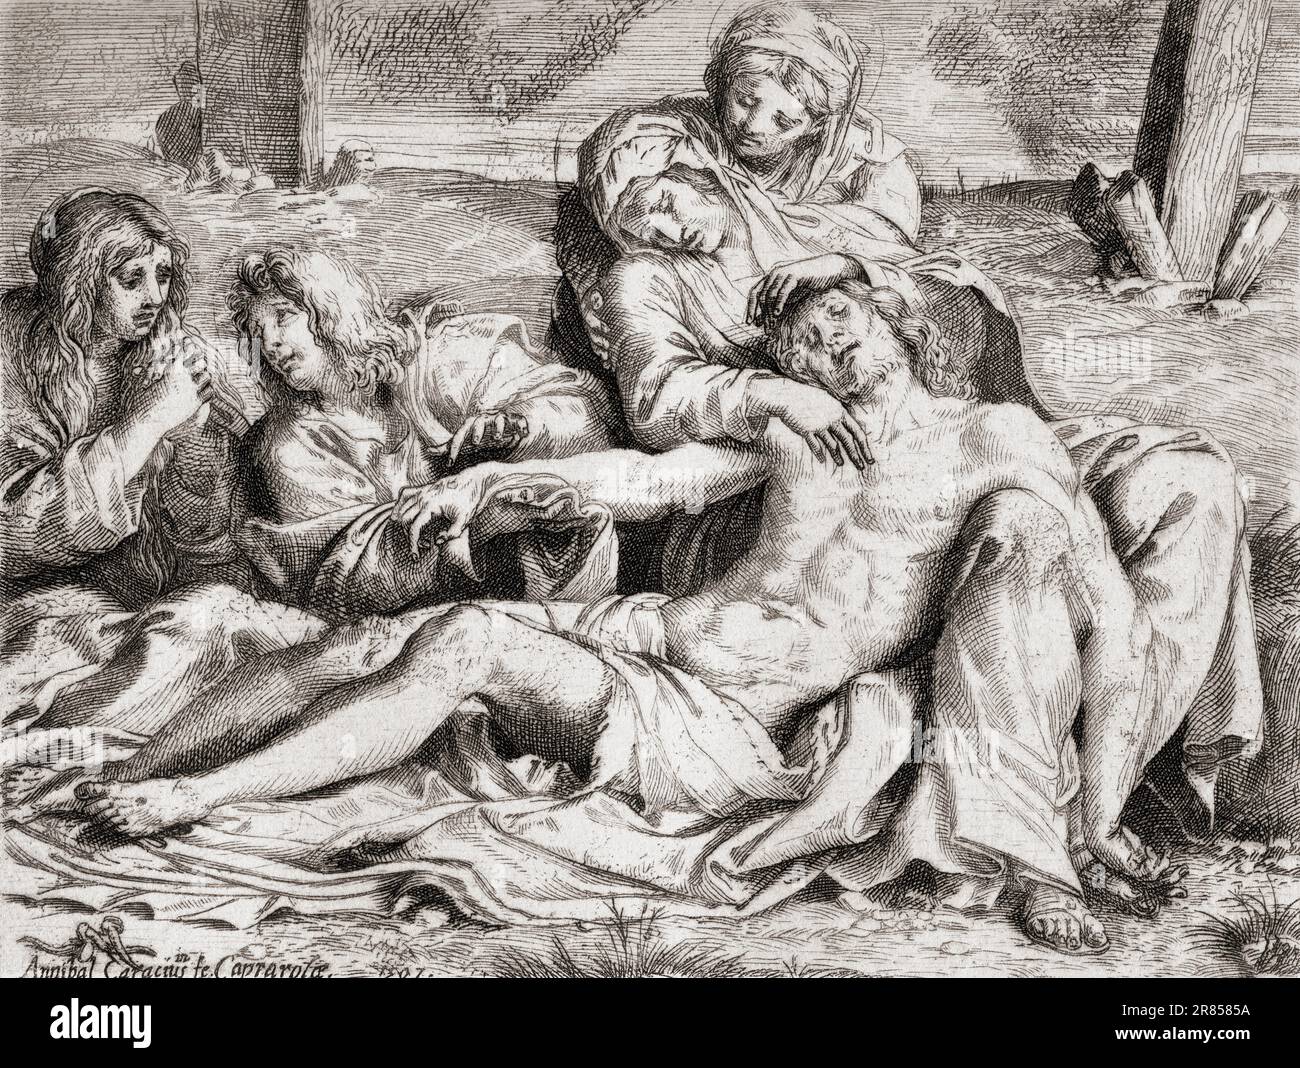 La Lamentation de Caprarola, après la gravure d'Annibale Carracci . De l'Histoire de la Gravoure, publié en 1880 Banque D'Images